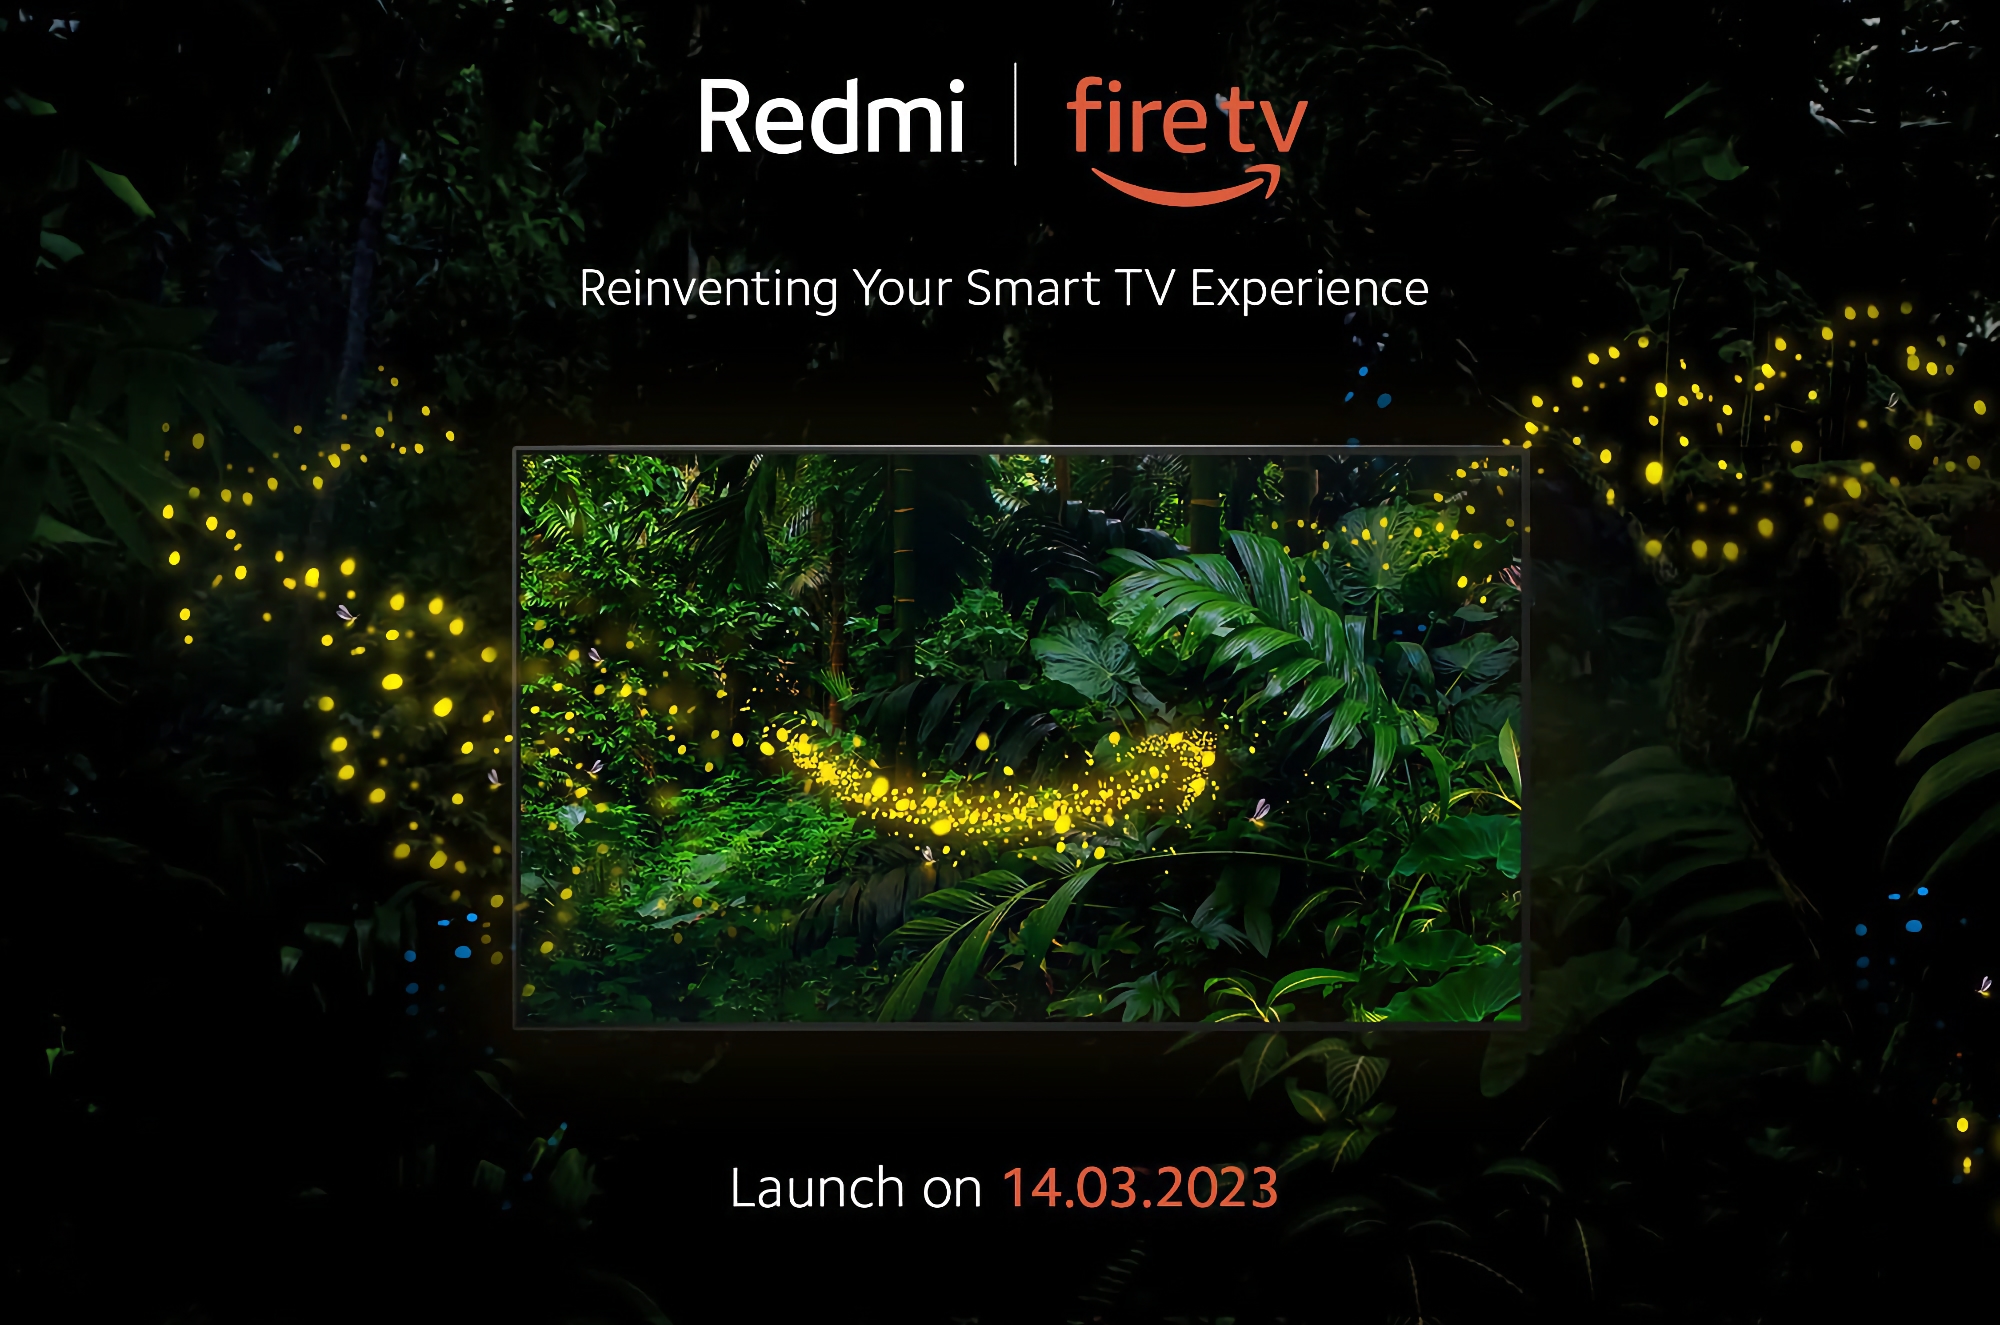 Xiaomi presenterà la prima smart TV Redmi con Fire OS e supporto per Amazon Alexa il 14 marzo.